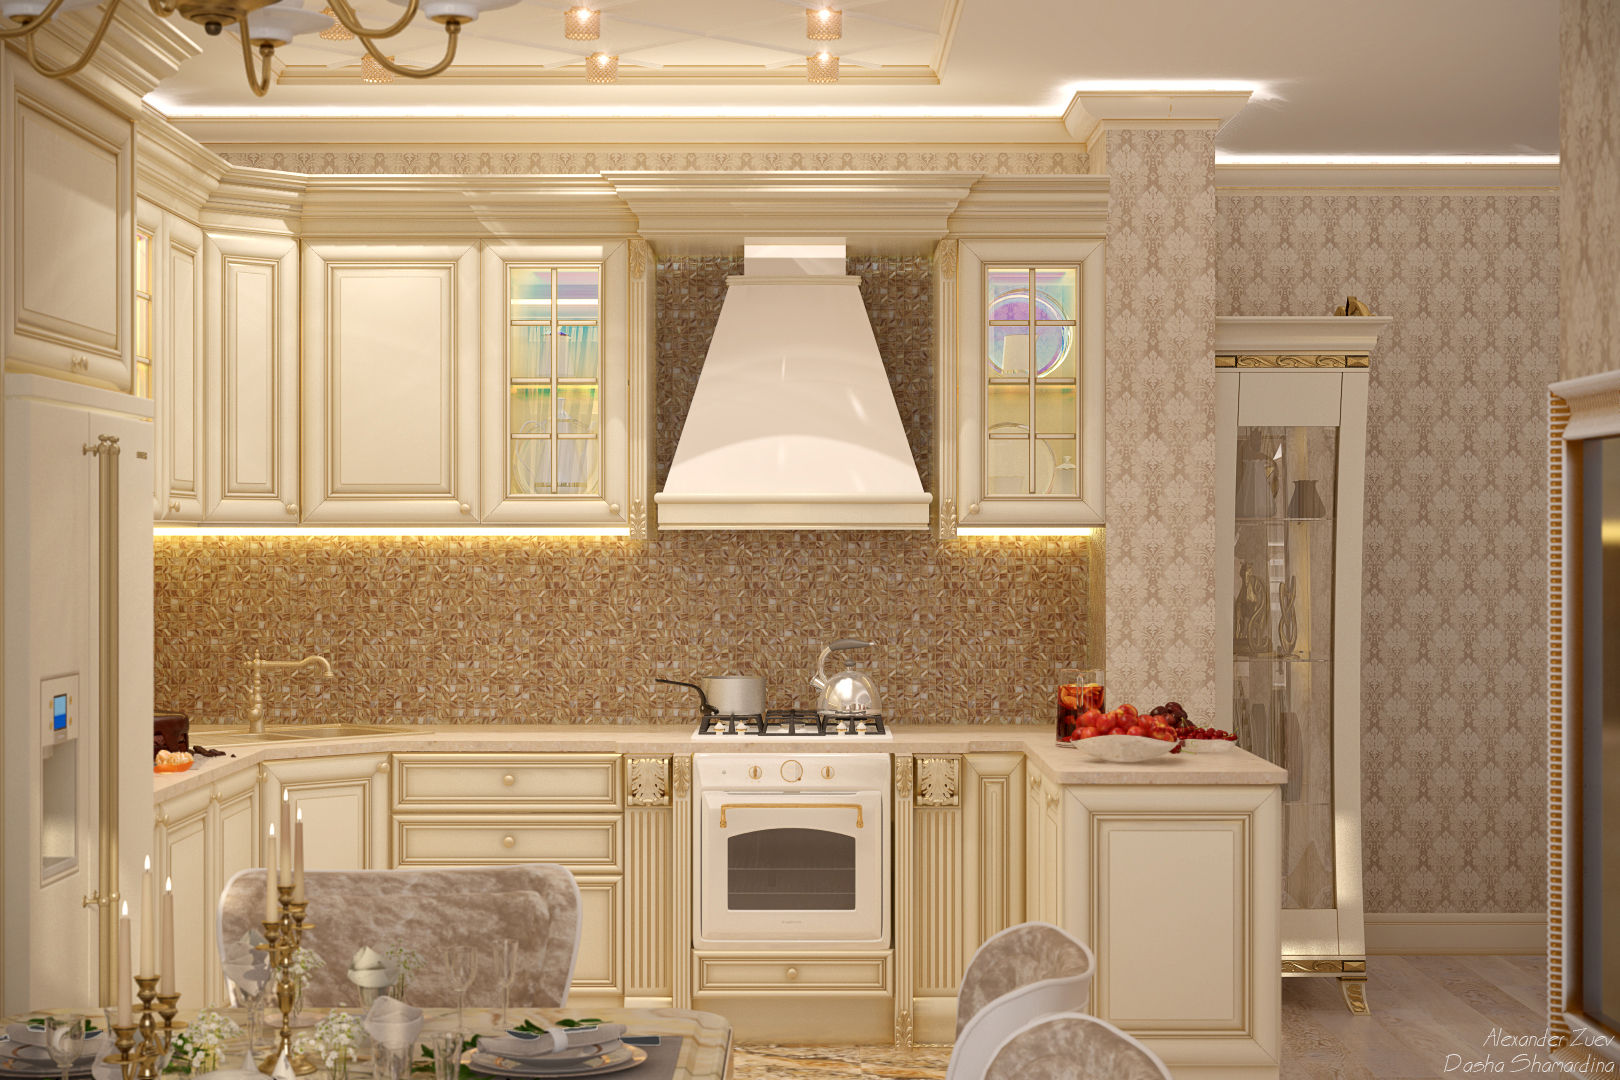 Дизайн кухни-гостиной в классическом стиле в квартире в ЖК "Ливанский дом", г.Краснодар Студия интерьерного дизайна happy.design Кухня в классическом стиле